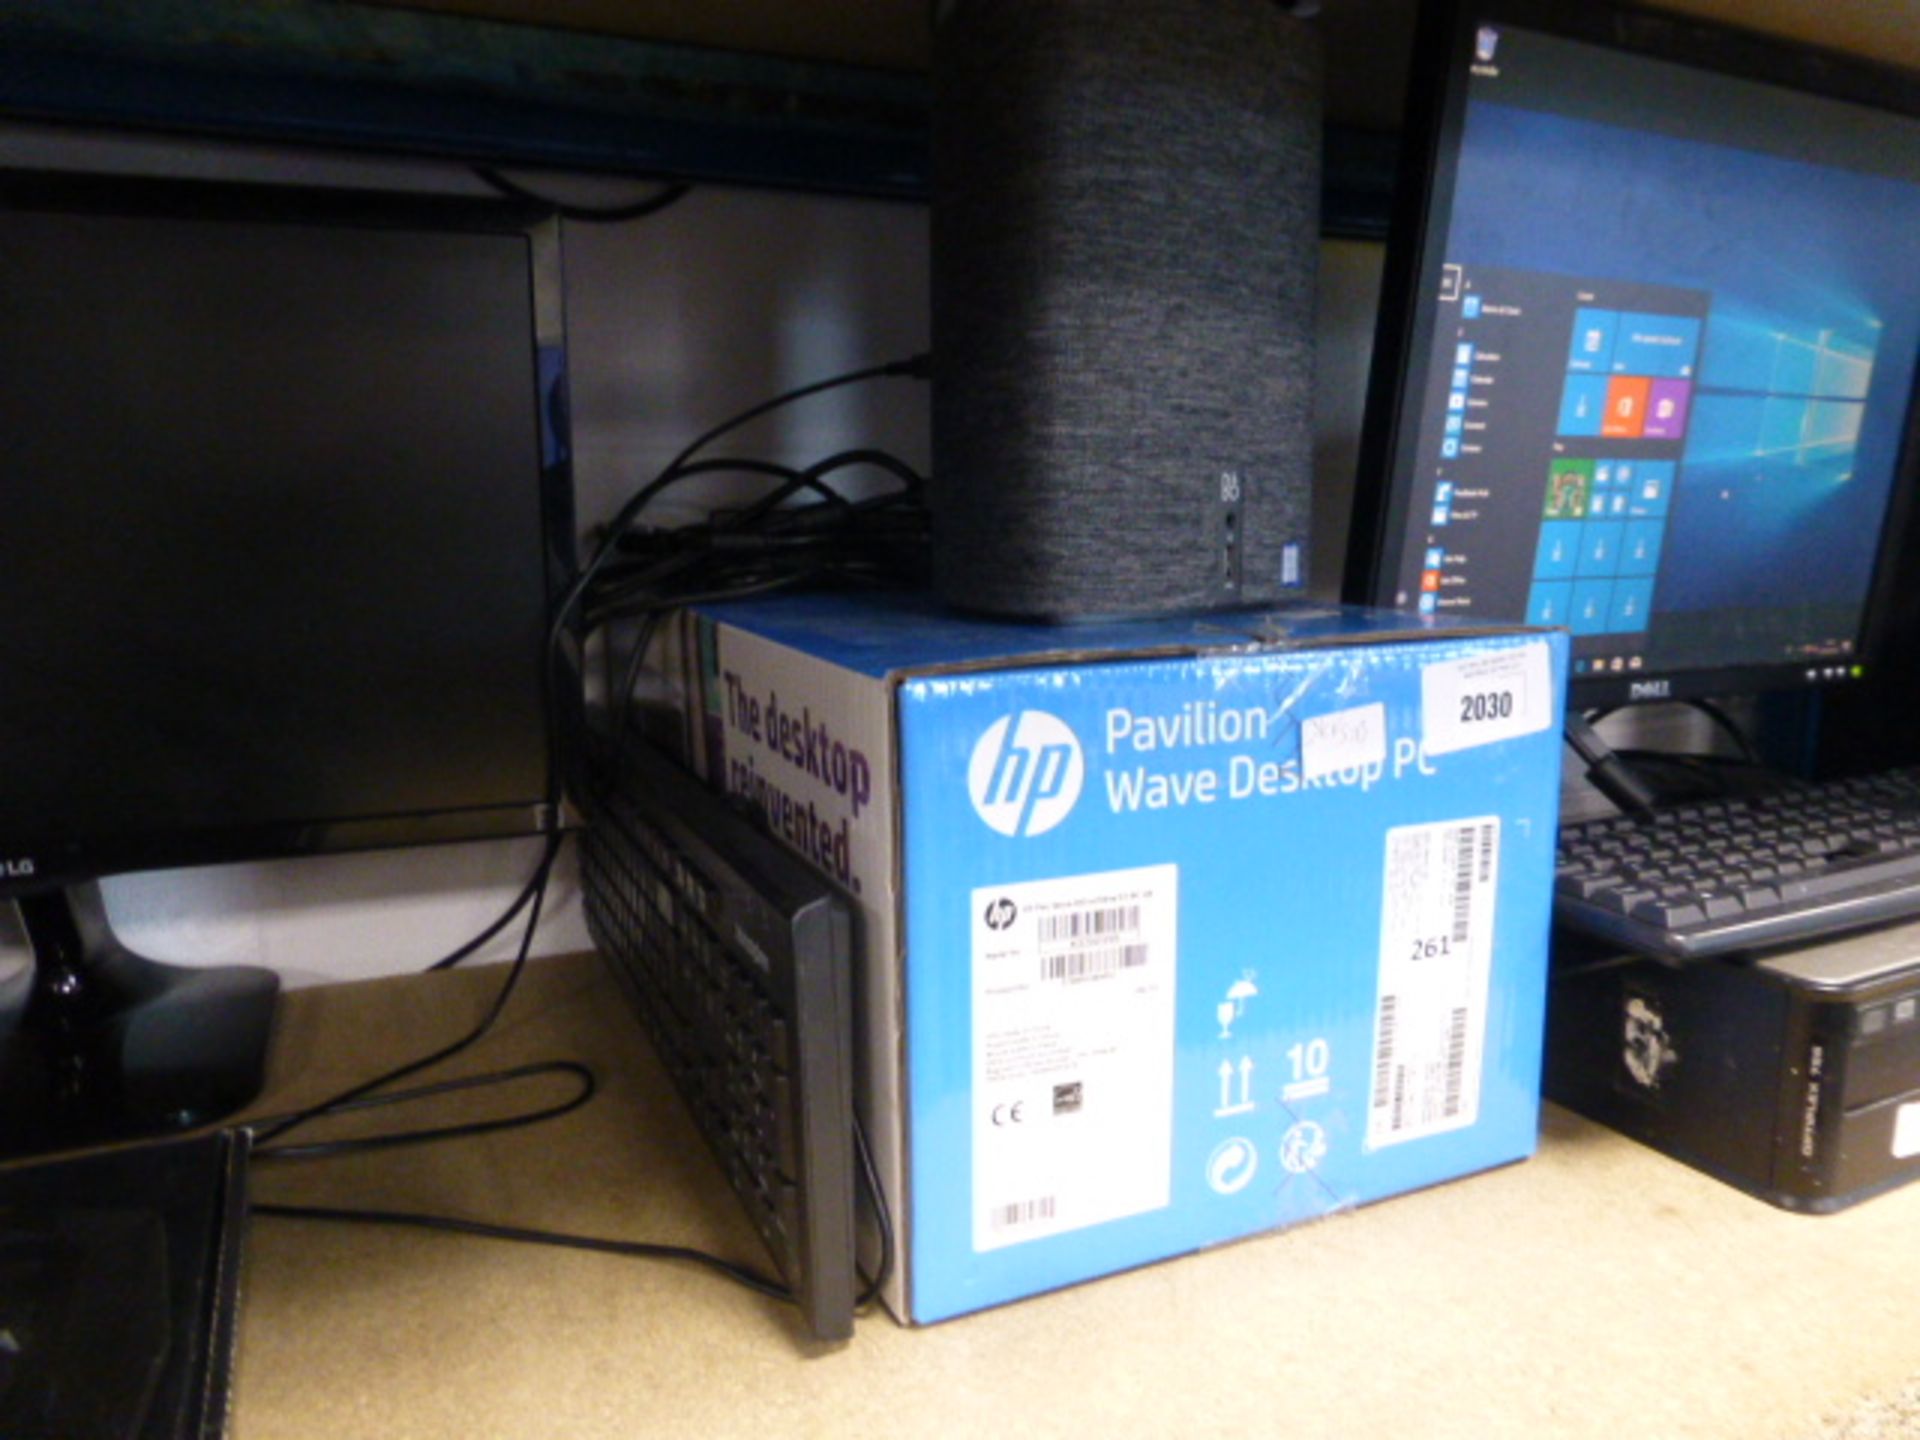 2051 HP Pavilion wave desktop PC